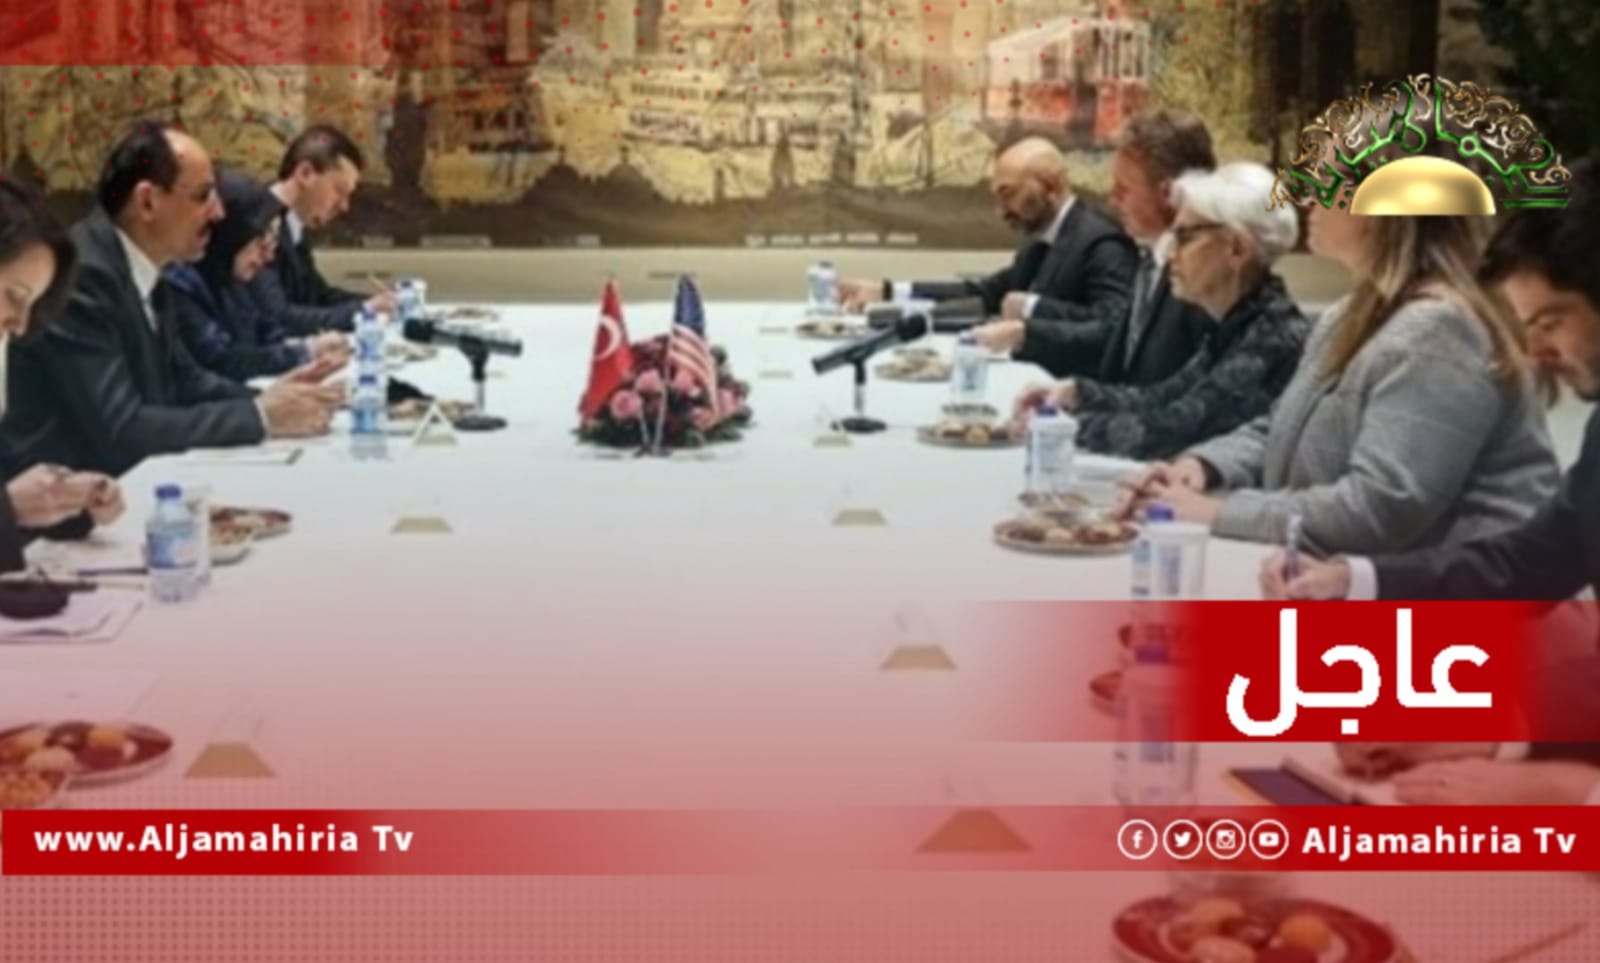 عاجل| المتحدث باسم الرئاسة التركية يناقش مع نائبة وزير الخارجية الأمريكية سبل تحقيق الاستقرار في ليبيا وسوريا وأفغانستان